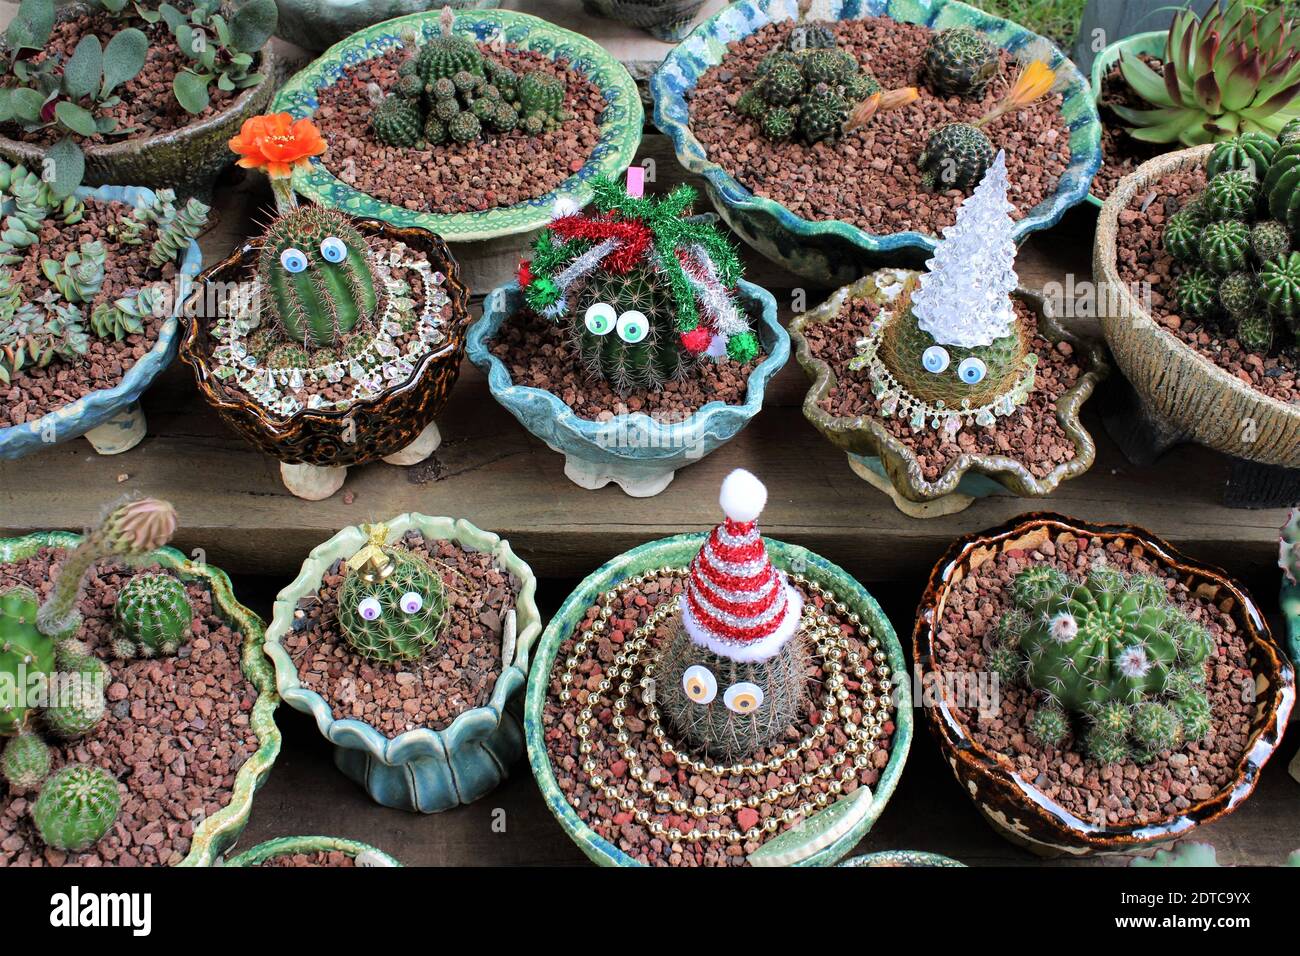 Colección de cactus de mi jardín, decorado con decoraciones navideñas. Foto de stock